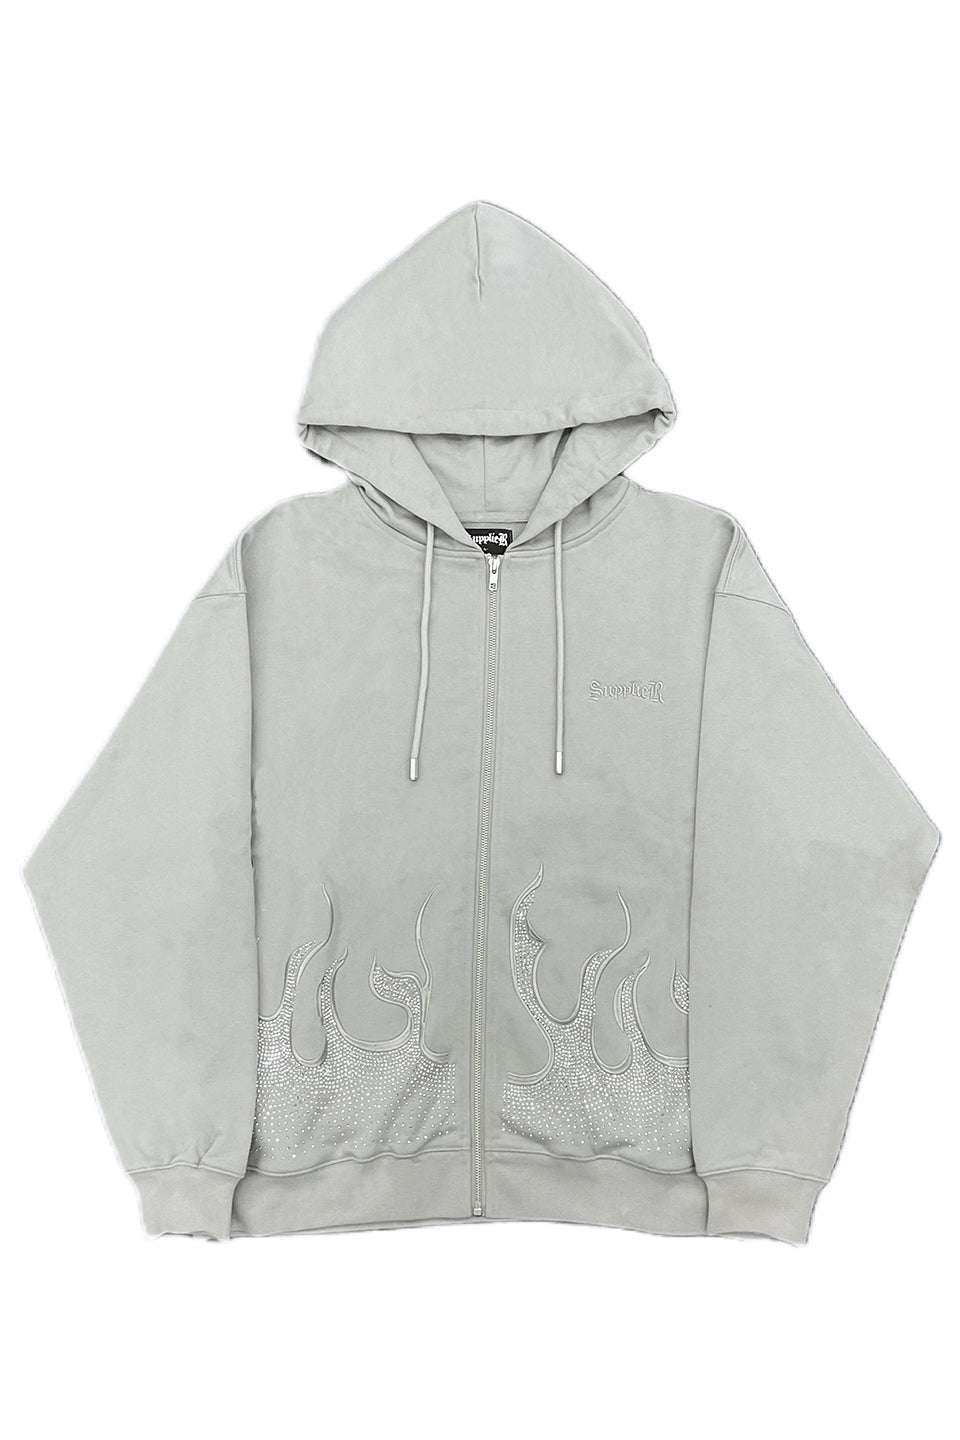 【original】rhinestone zip hoodie(black)